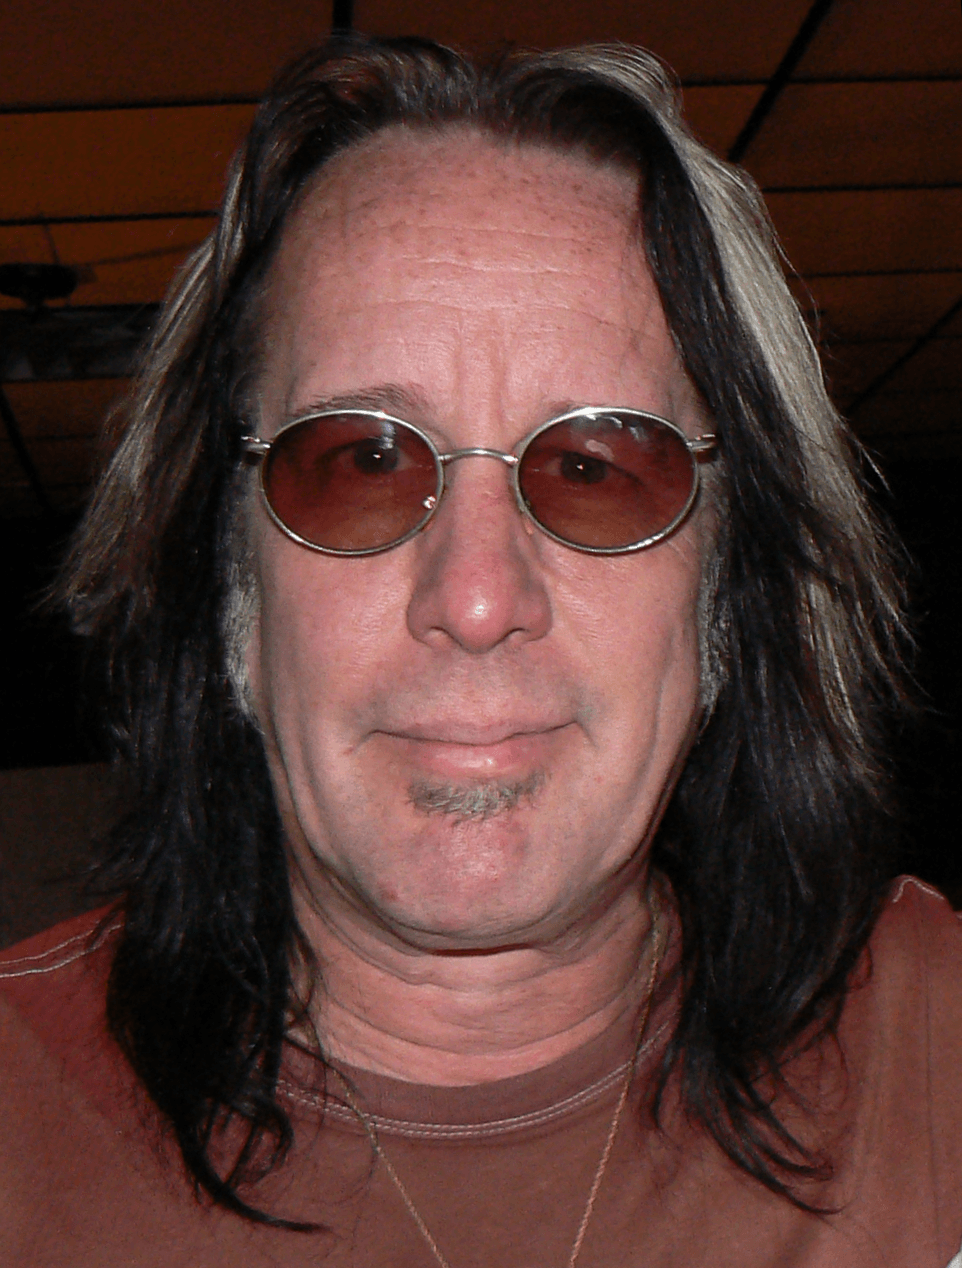 auteur Todd Rundgren de la citation Mes héros de guitare sont Eric Clapton et Jeff Beck et des gens comme ça - j'ai donc essayé de faire un album de Robert Johnson Covers que, bien que pas totalement fidèle pour les puristes de blues, est fidèle pour des gens comme moi qui ont grandi avec le Les années 60 et les versions électriques de blues-rock des chansons de Johnson.